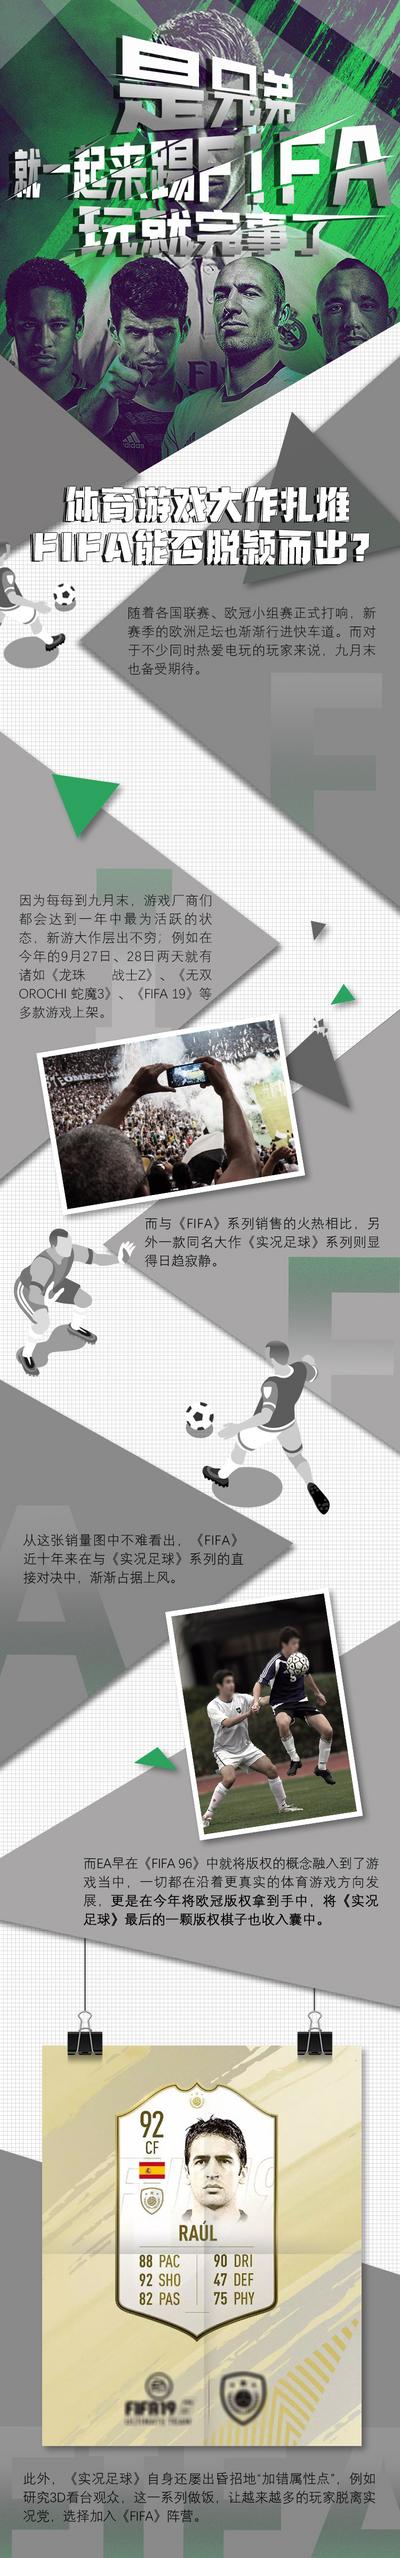 南门网 专题设计 长图 足球 排版 游戏 比赛 